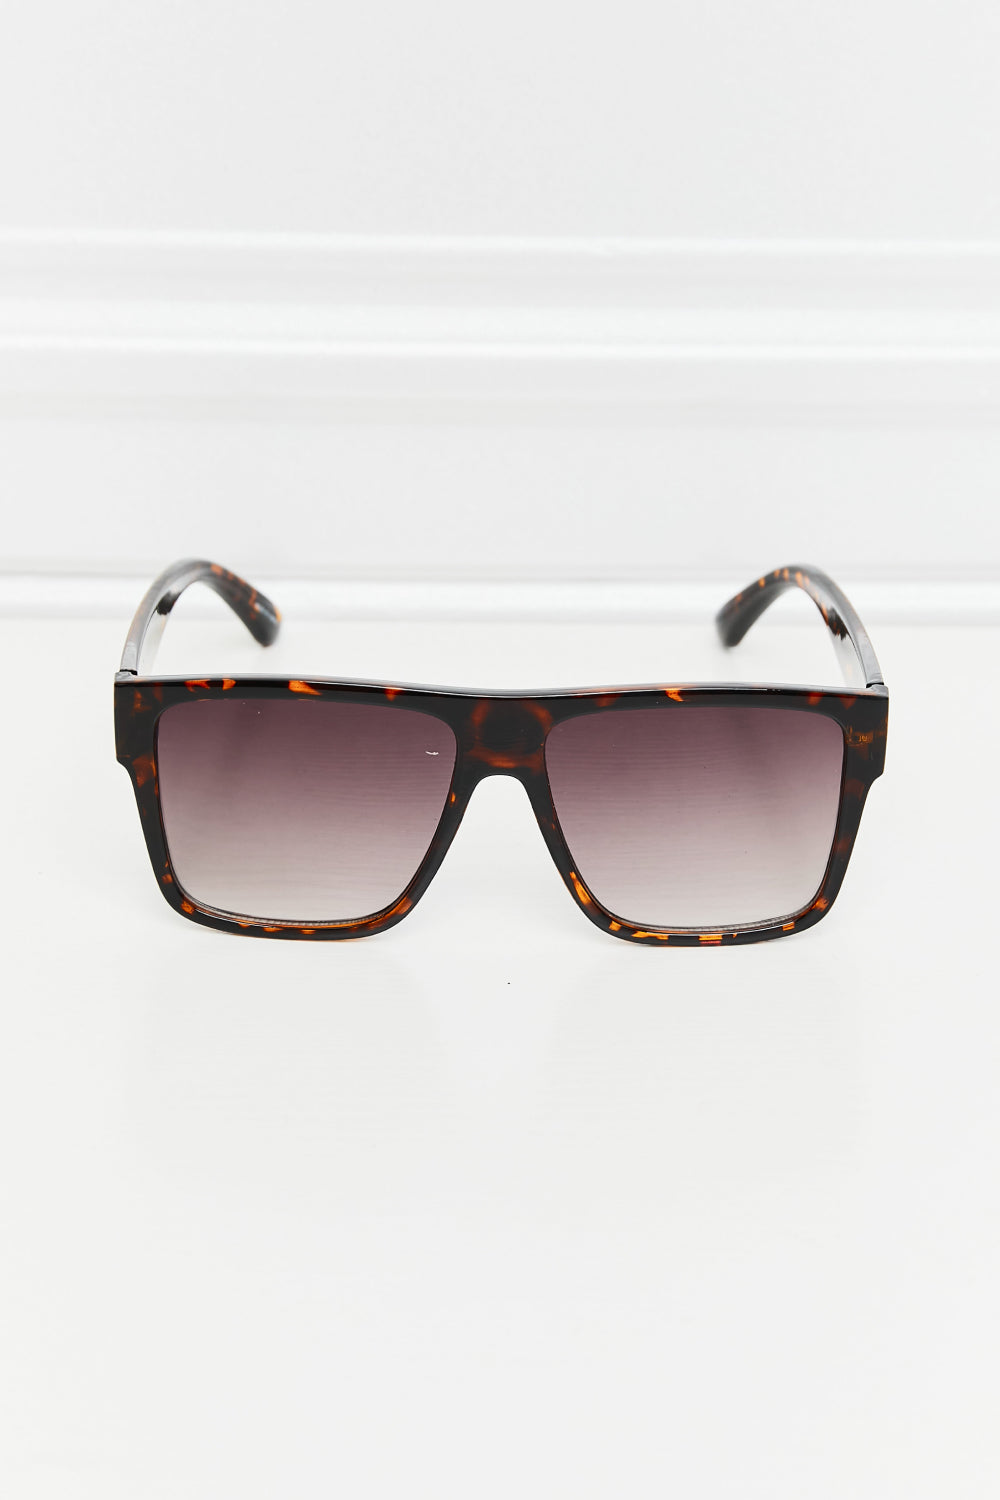 Tortoiseshell Square Full Rim Sunglasses - The Fashion Unicorn